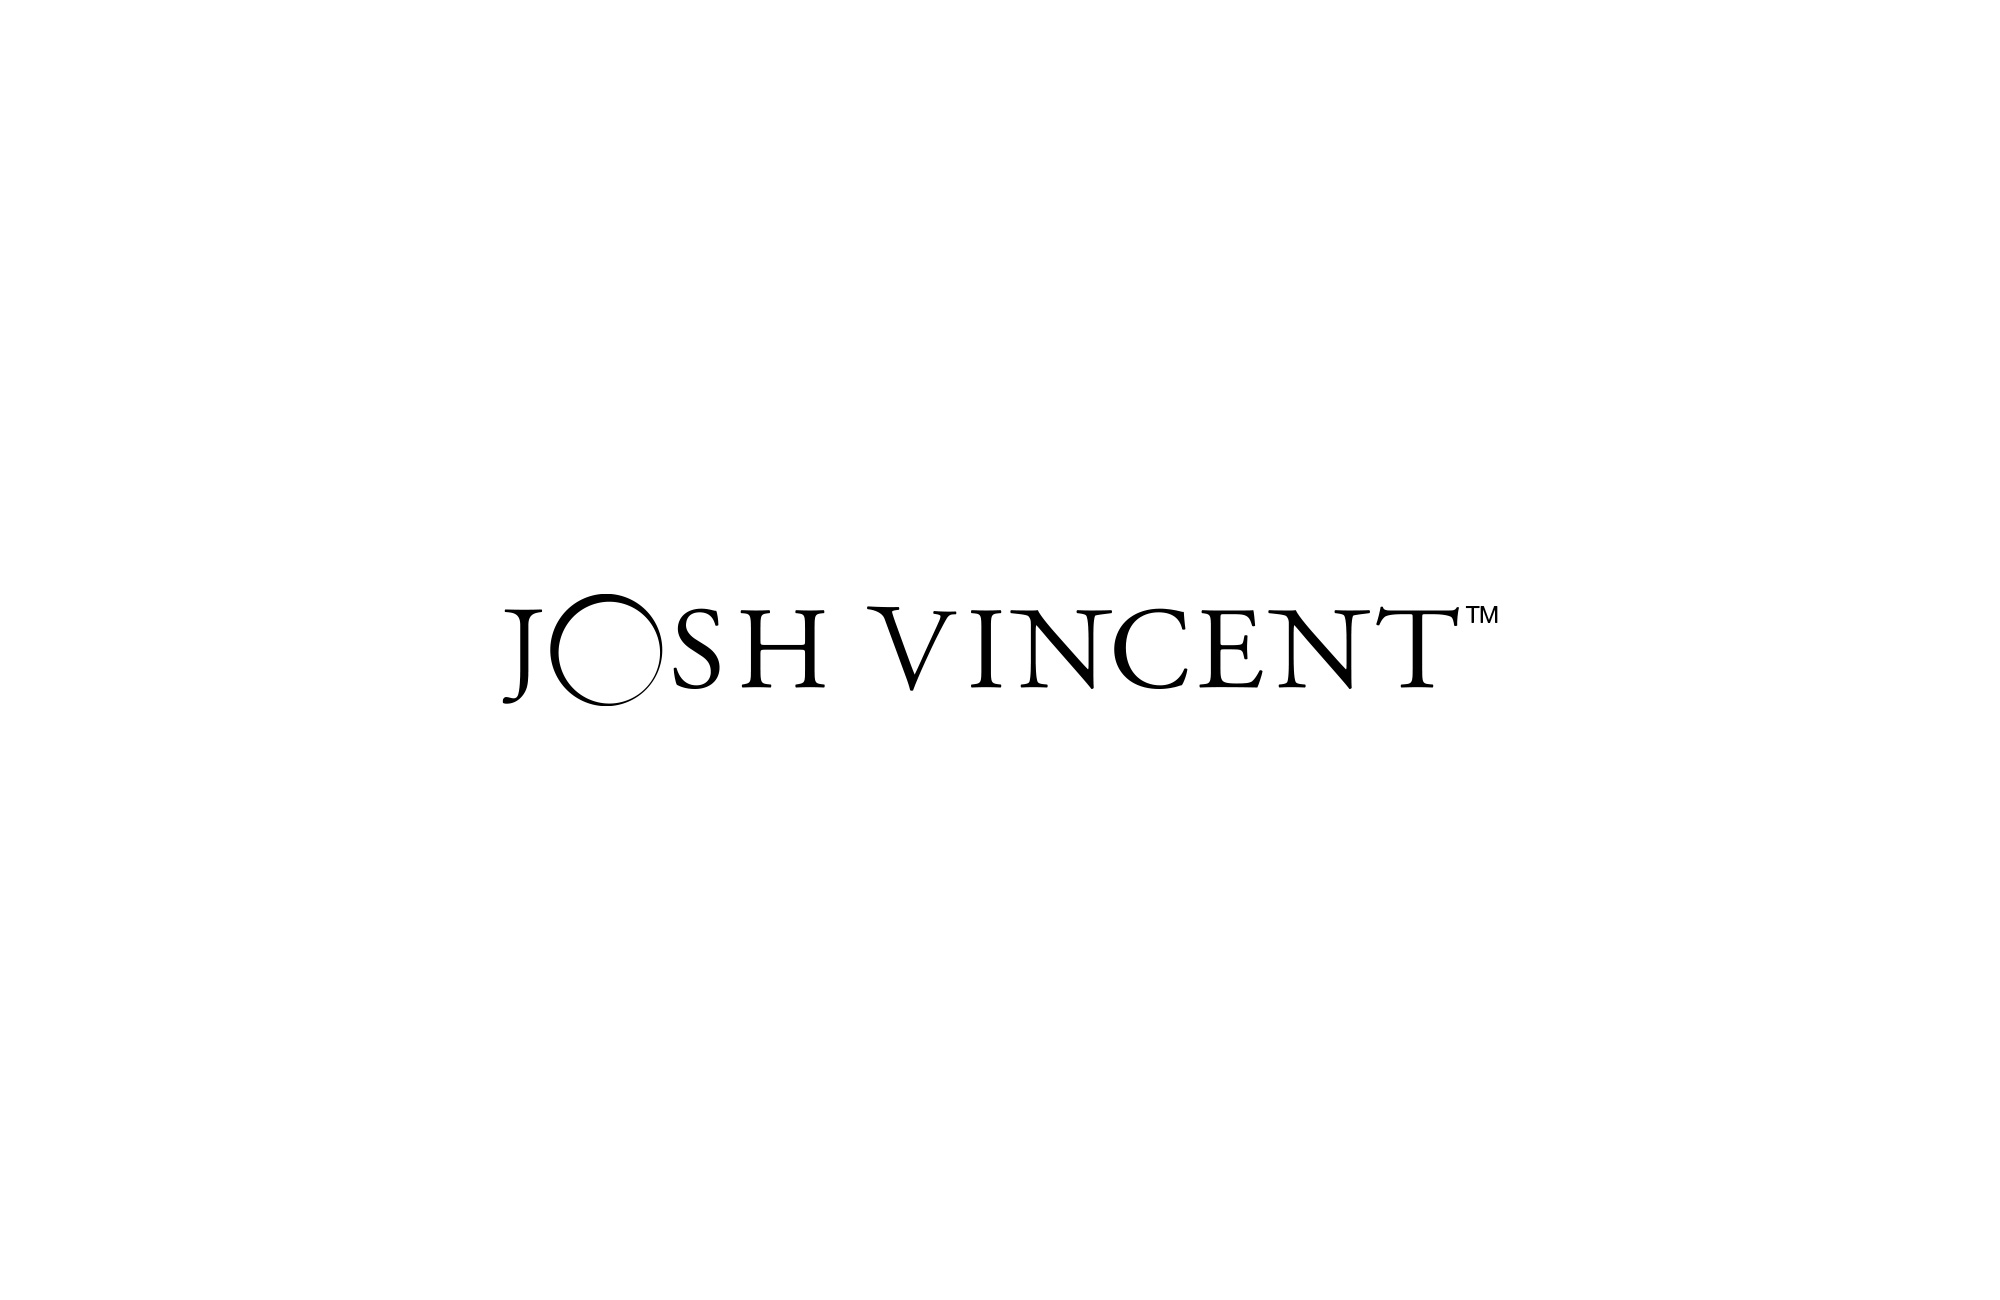 Josh Vincent Photography